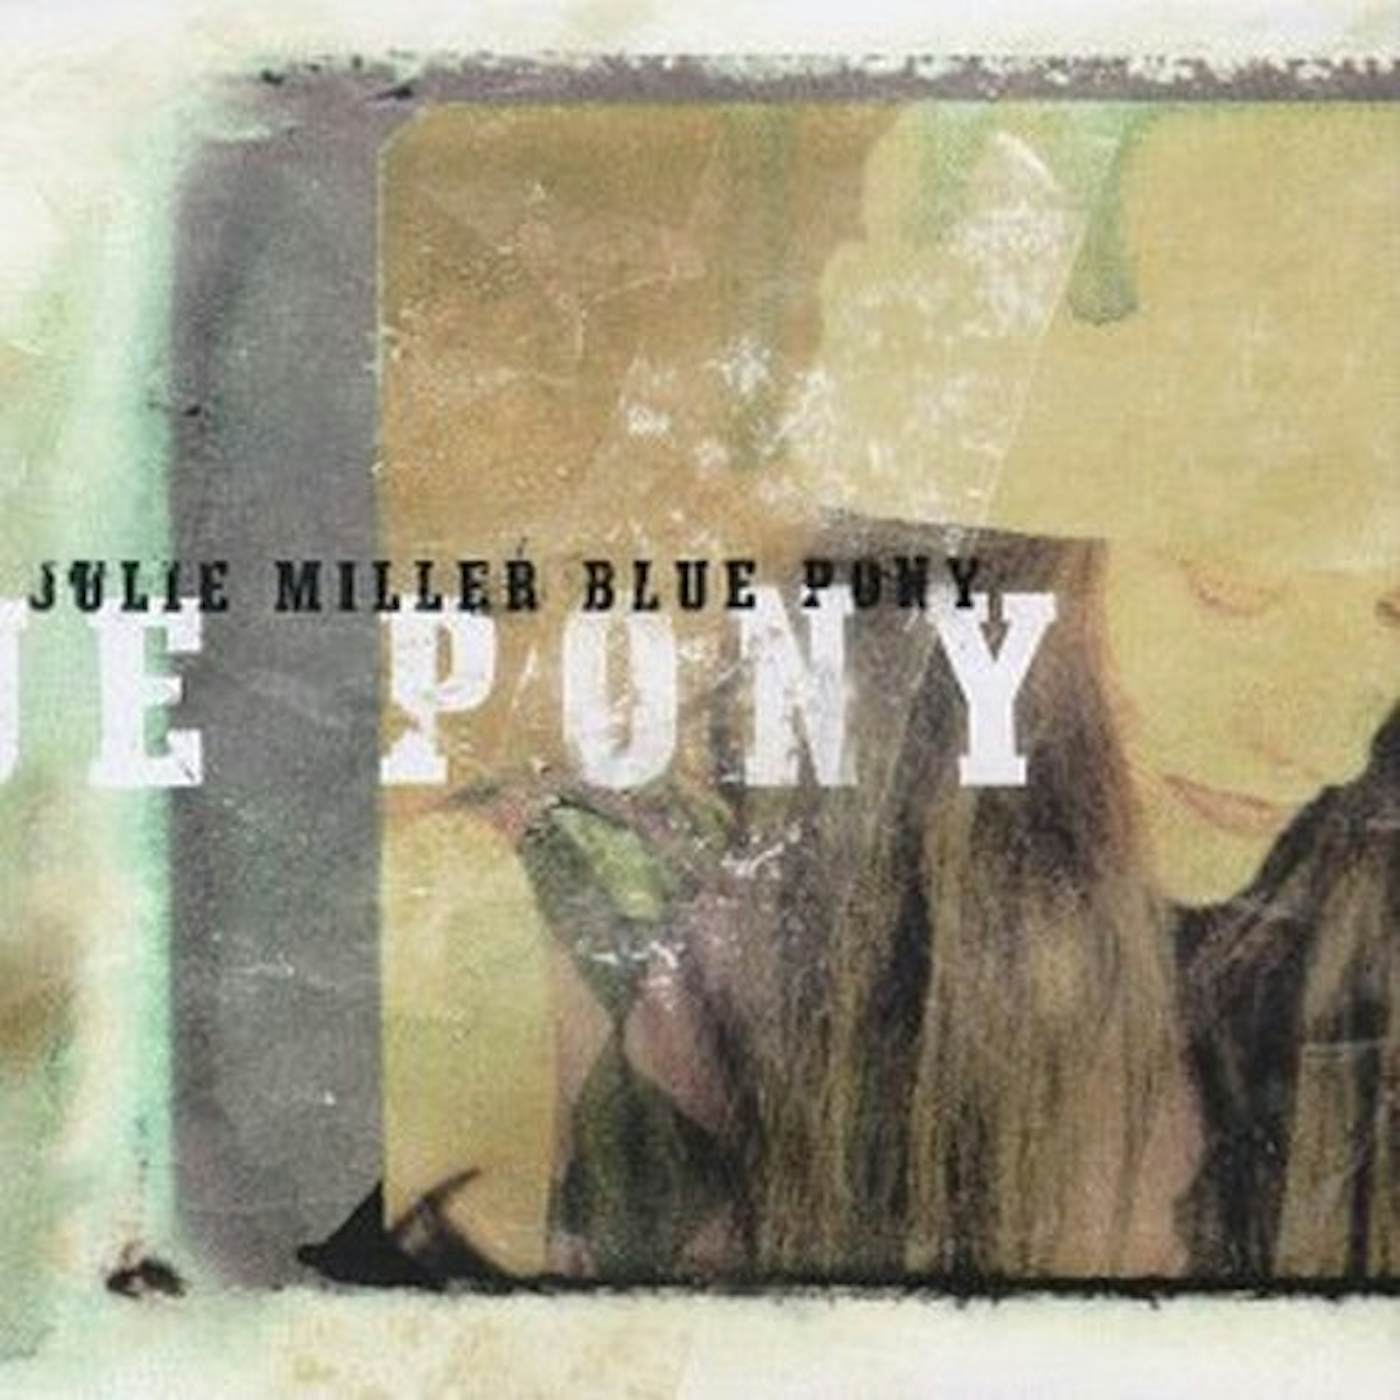 Julie Miller BLUE PONY CD